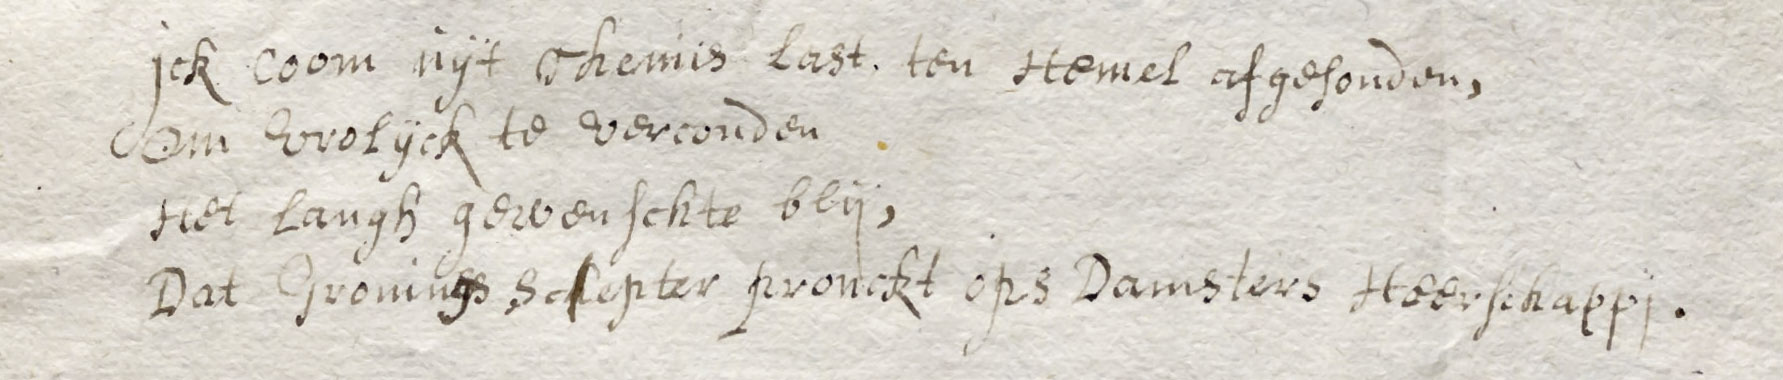 Alinea uit het gedicht van Sibylle van Griethuysen, 1650. Groninger Archieven (1605-198)